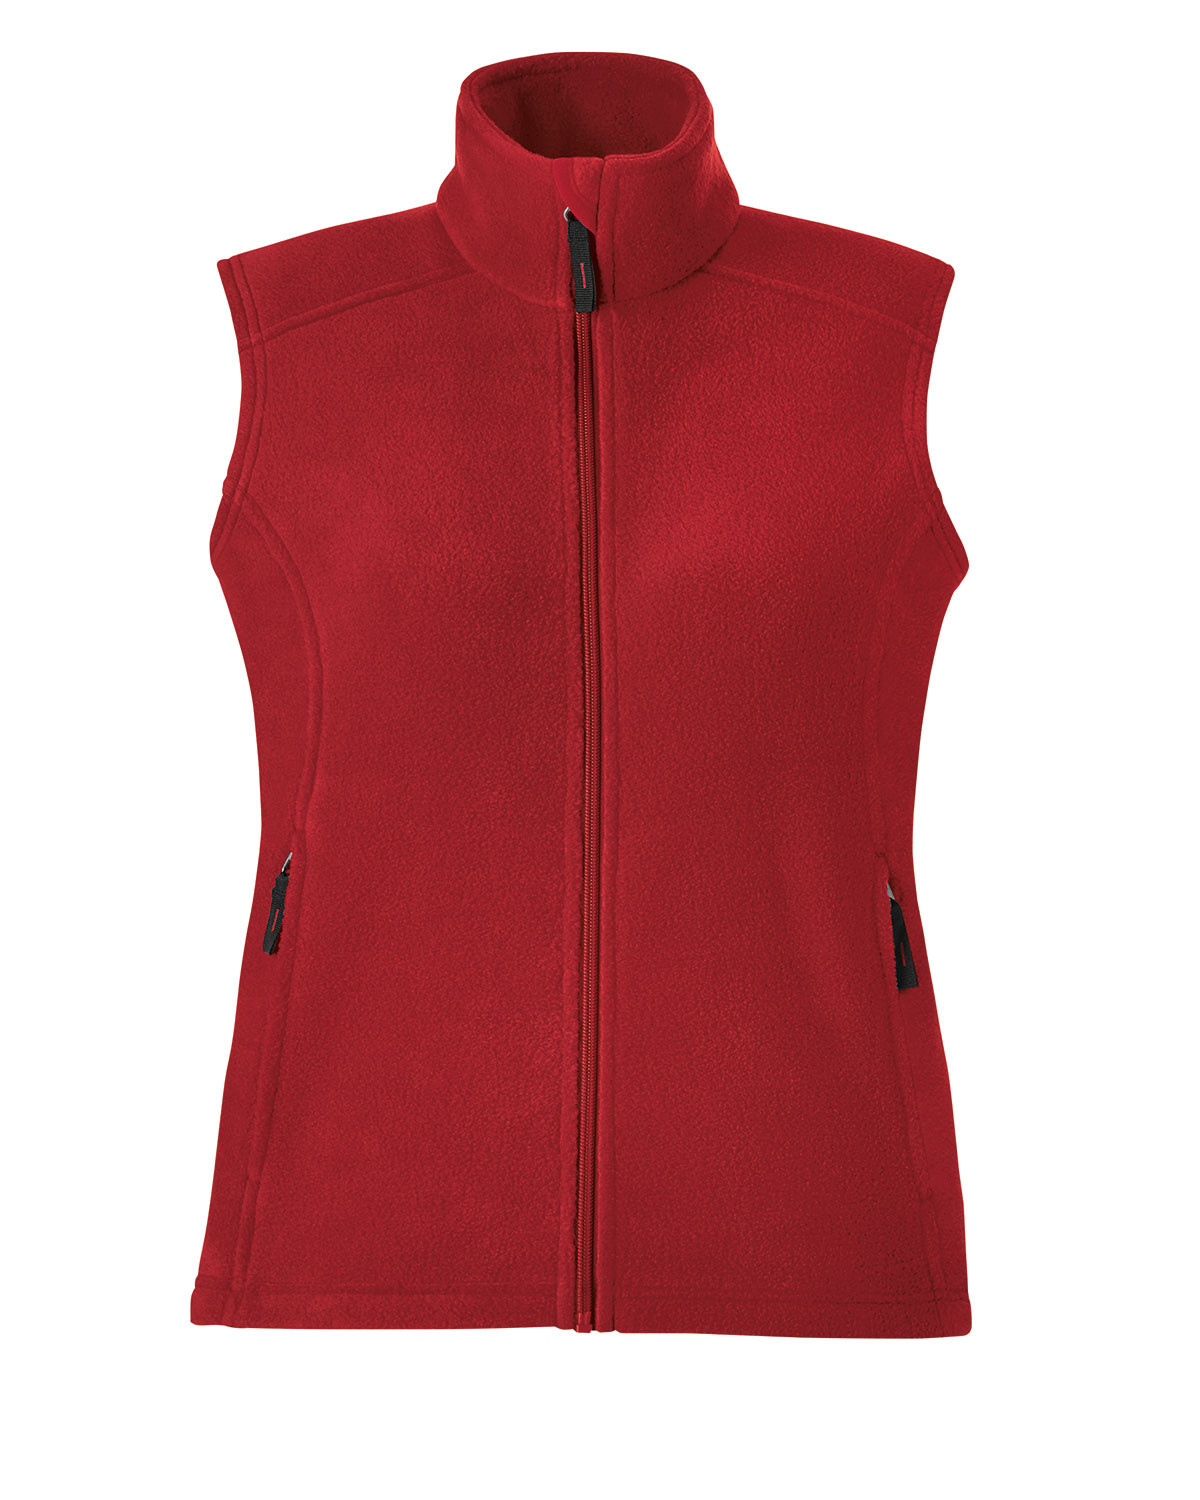 Core 365 78191 - Ladies' Journey Fleece Vest